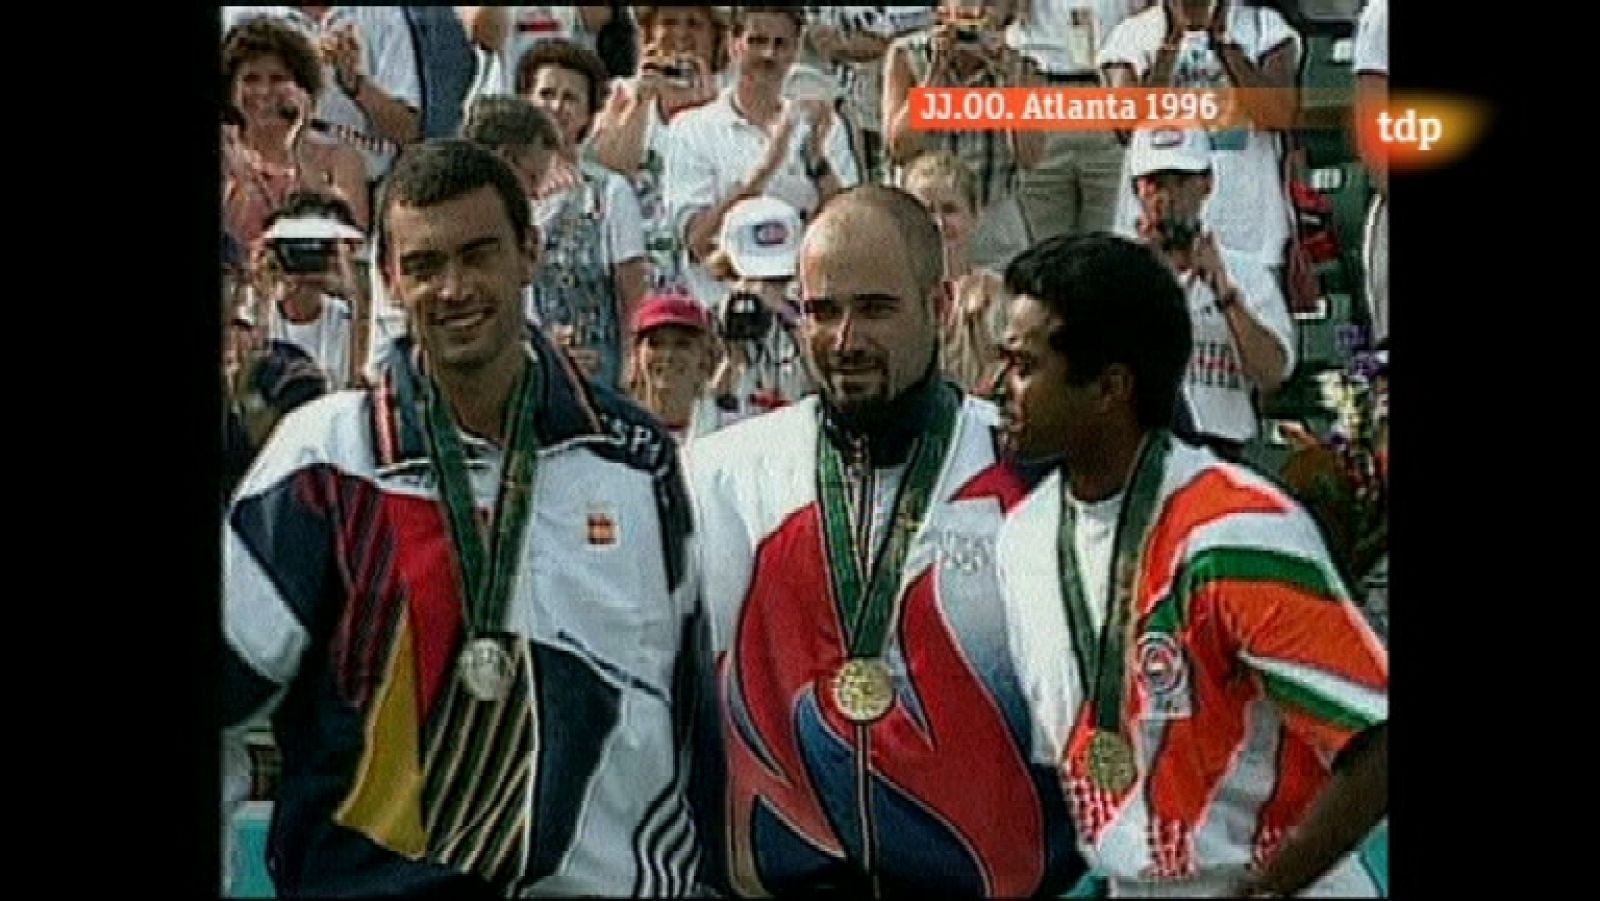 Londres en juego - Atlanta 1996. Tenis. Final masculina: S. Bruguera - A. Agassi